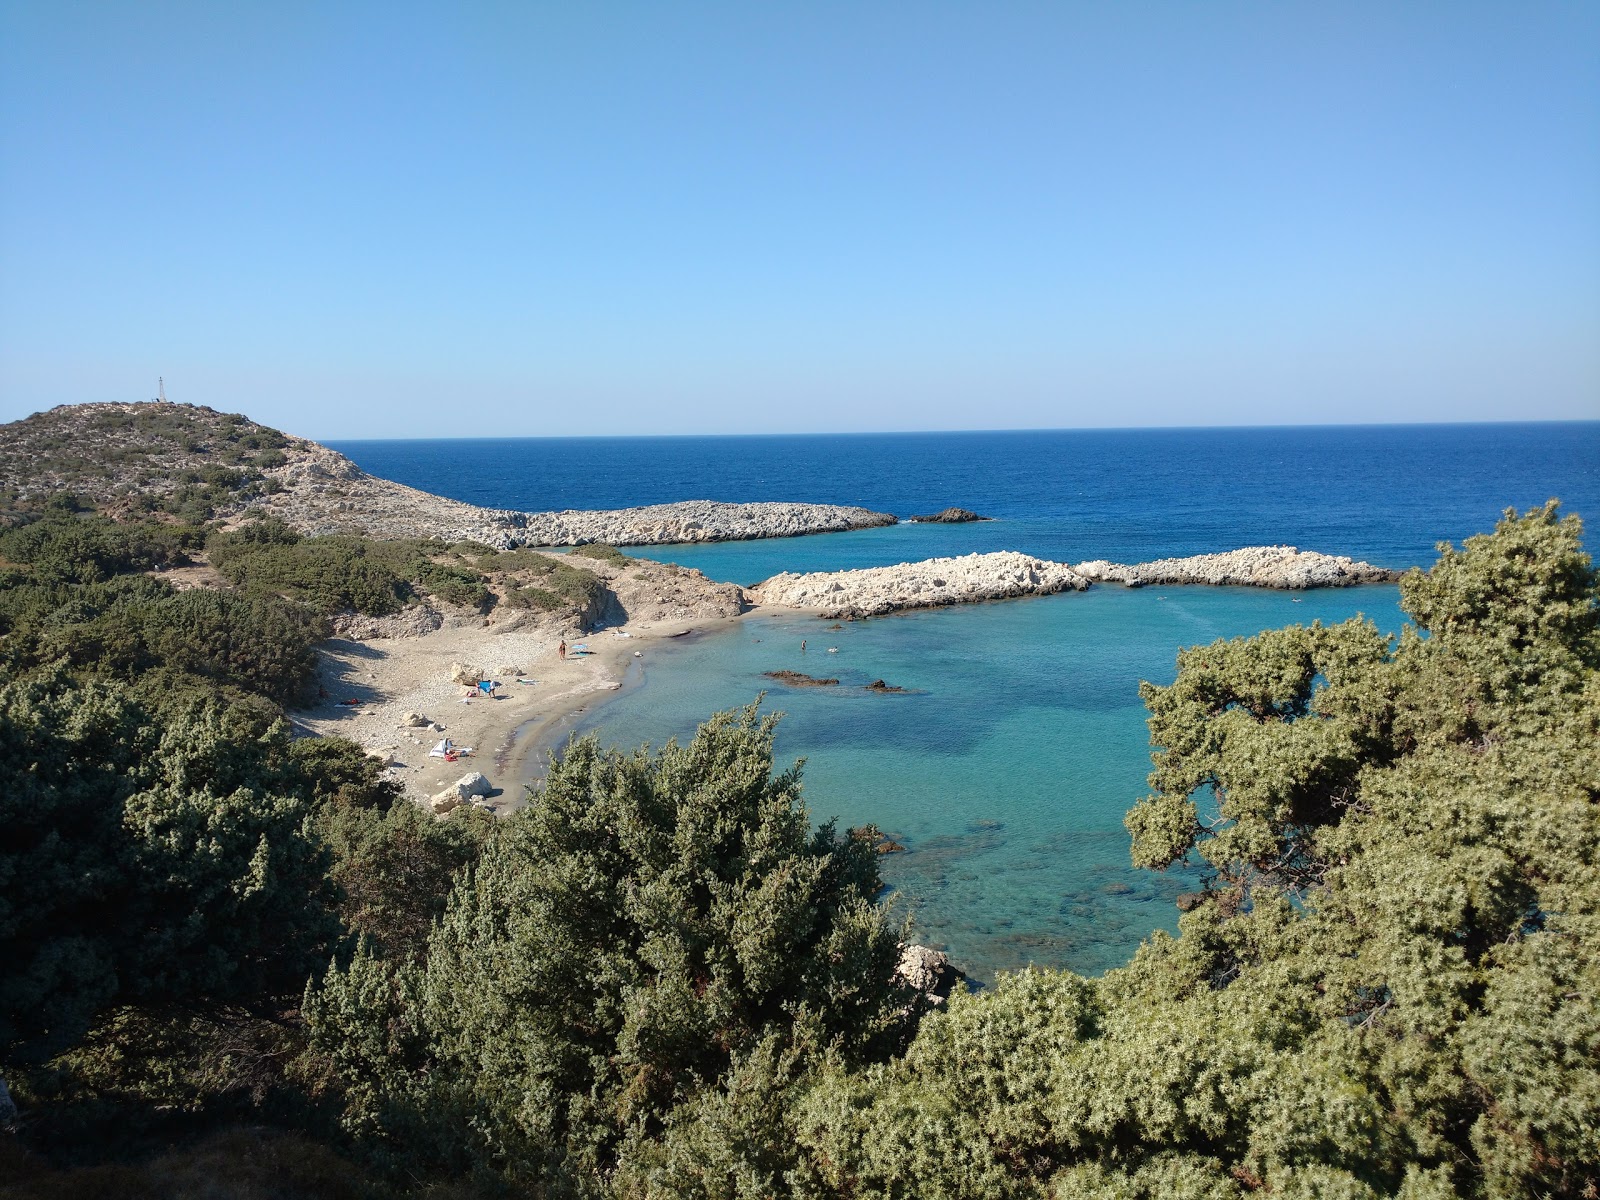 Fotografie cu Agios Georgios cu o suprafață de nisip maro